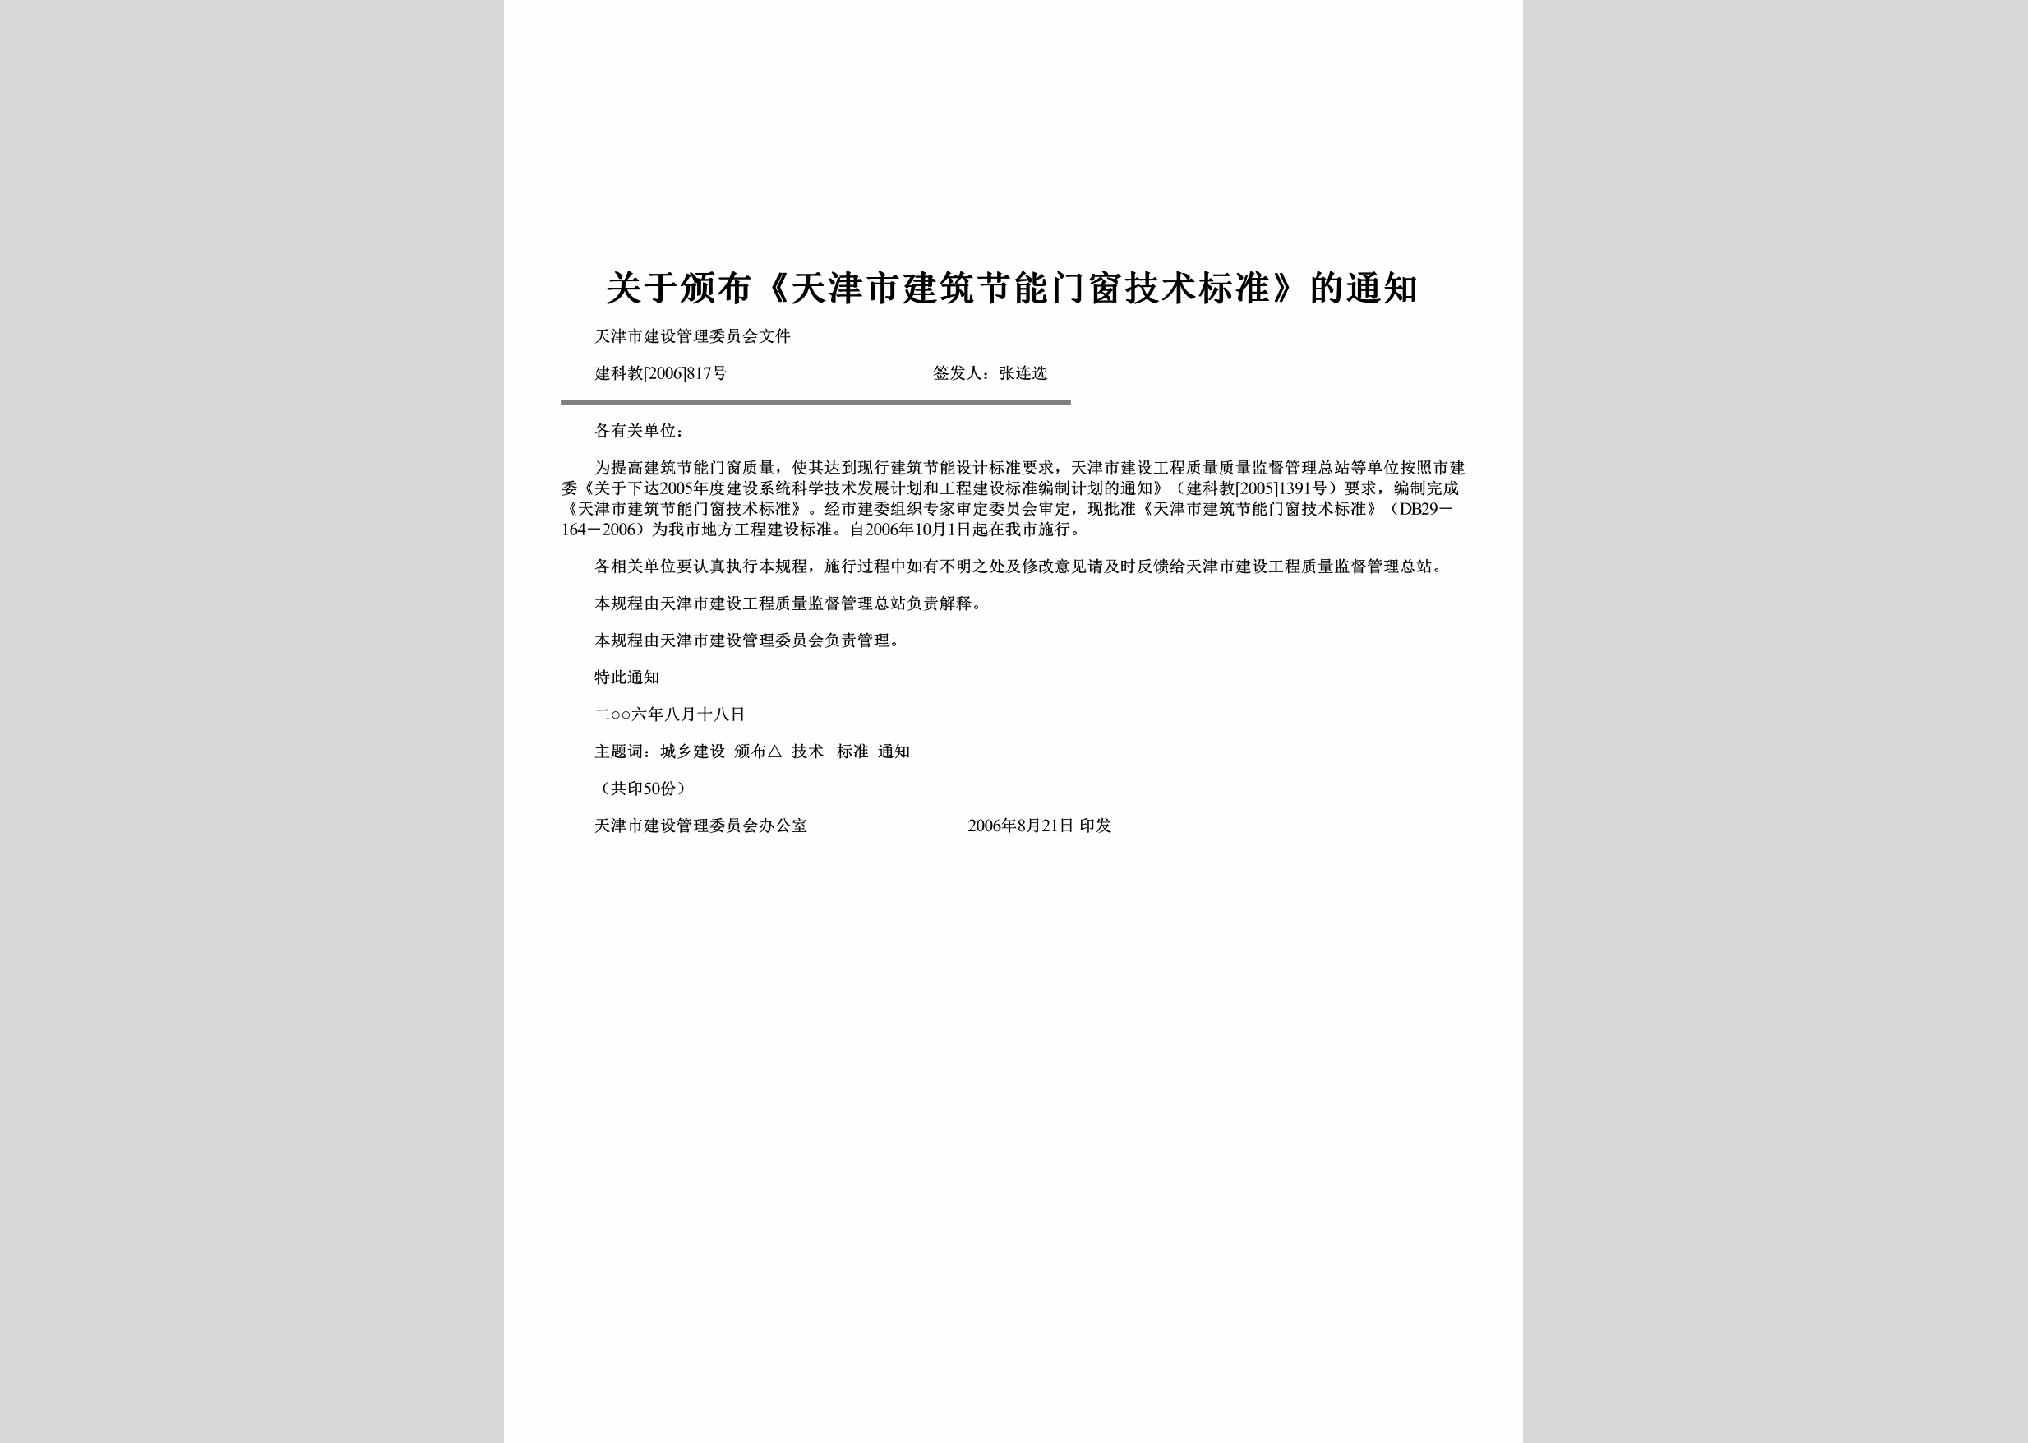 建科教[2006]817号：关于颁布《天津市建筑节能门窗技术标准》的通知